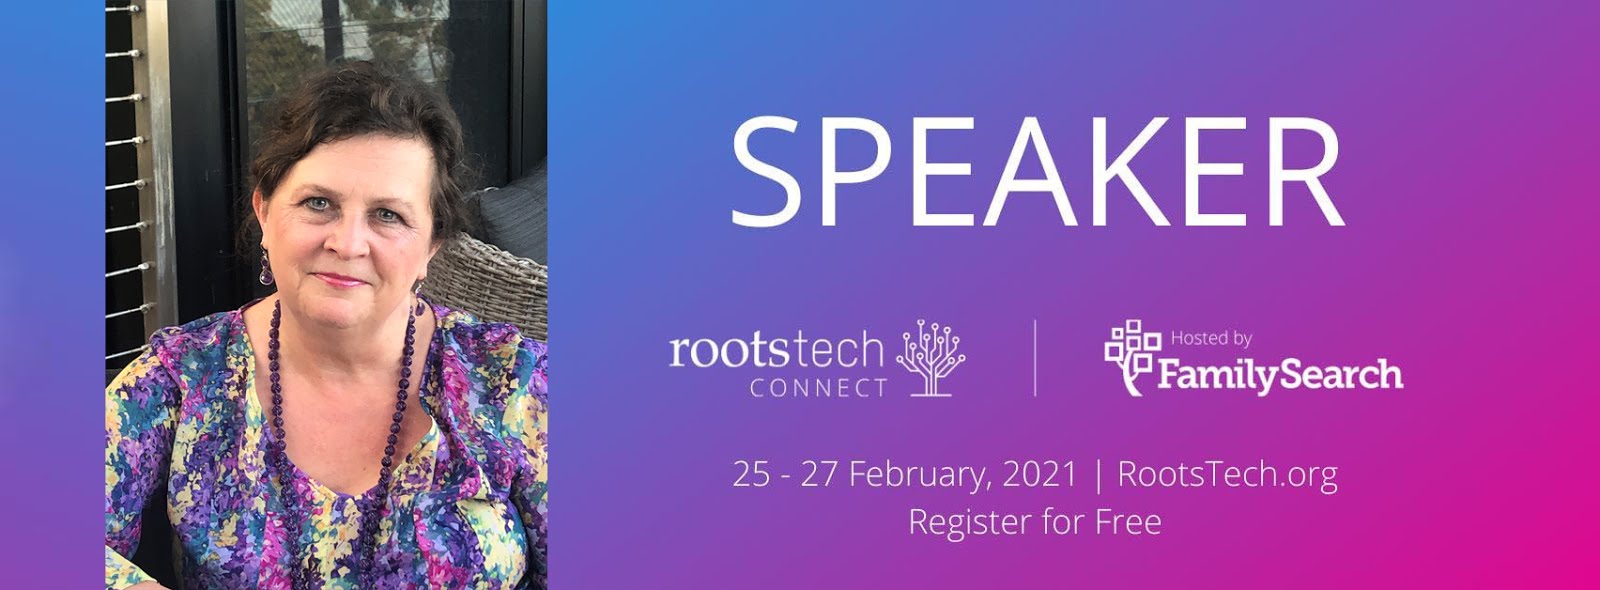 RootsTech speaker